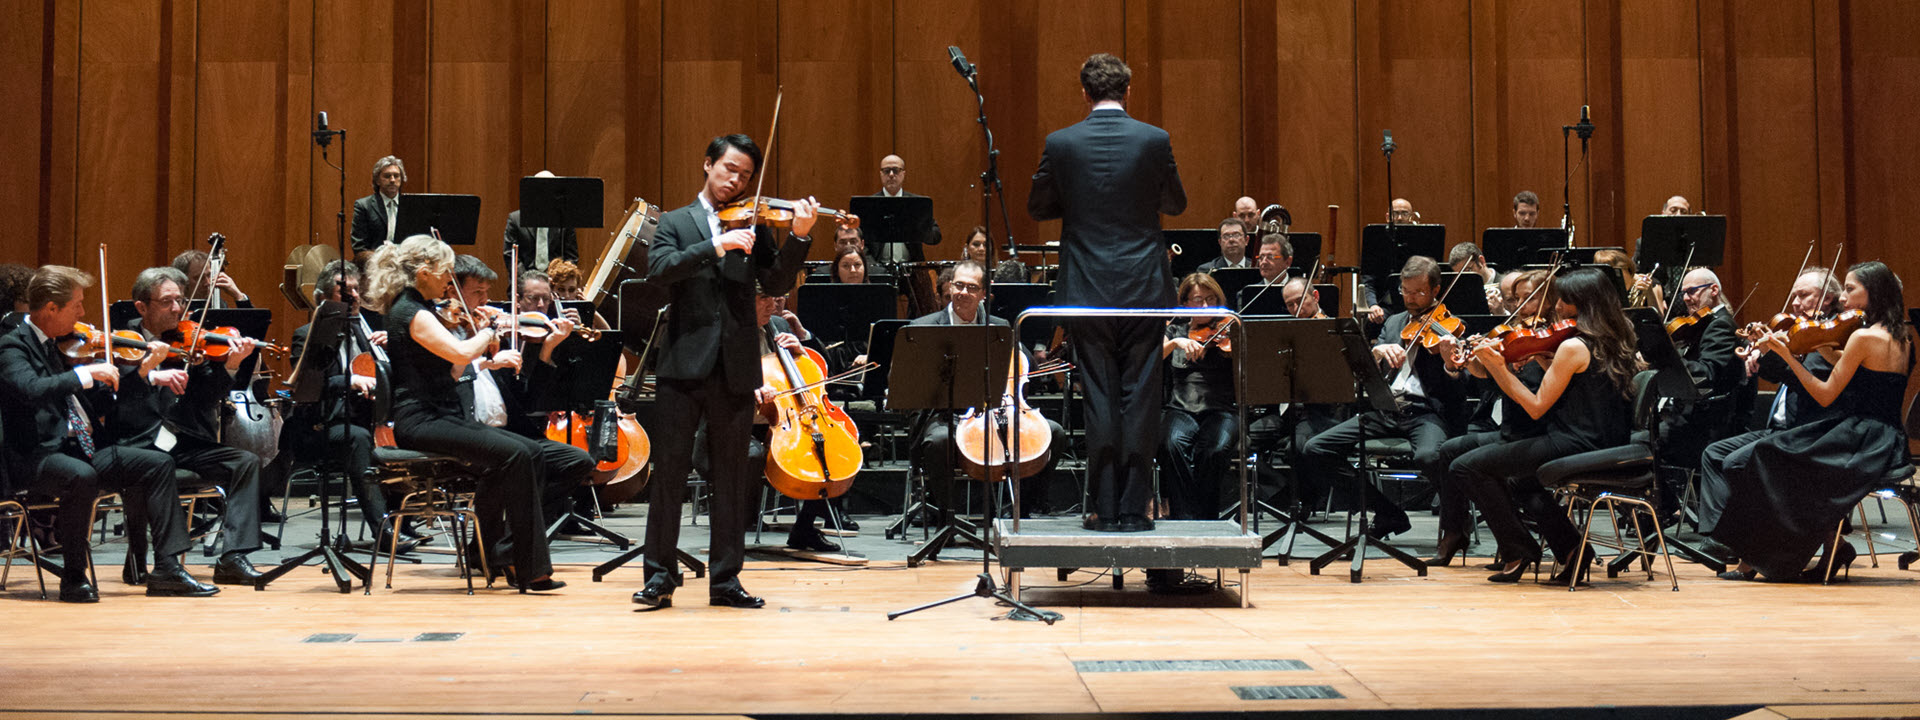 Nel giorno del World Music Day, il Premio Paganini comunica i nomi dei 30 giovani violinisti ammessi alla 57esima del Concorso che si aprirà a Palazzo Tursi il 16 ottobre per concludersi al Teatro Carlo Felice il 27 ottobre, nel giorno del 241° anniversario della nascita di Paganini.